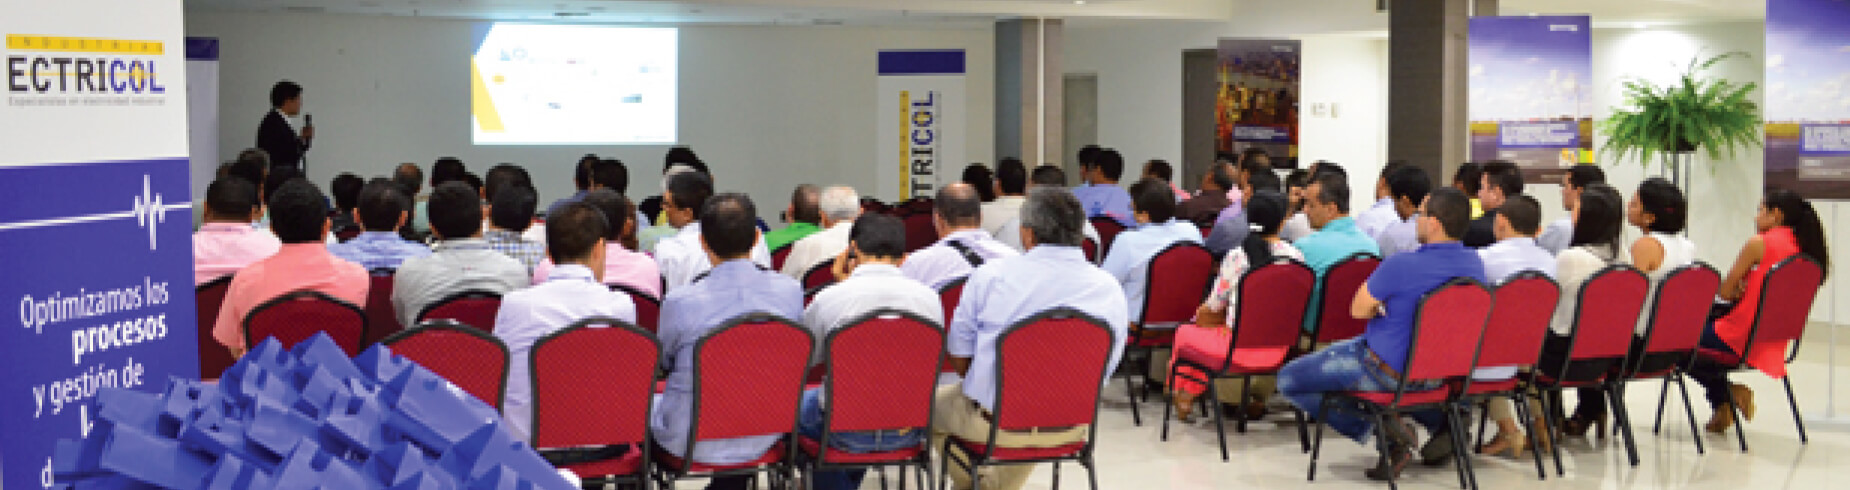 Ectricol presenta su portafolio de productos y servicios en Barranquilla